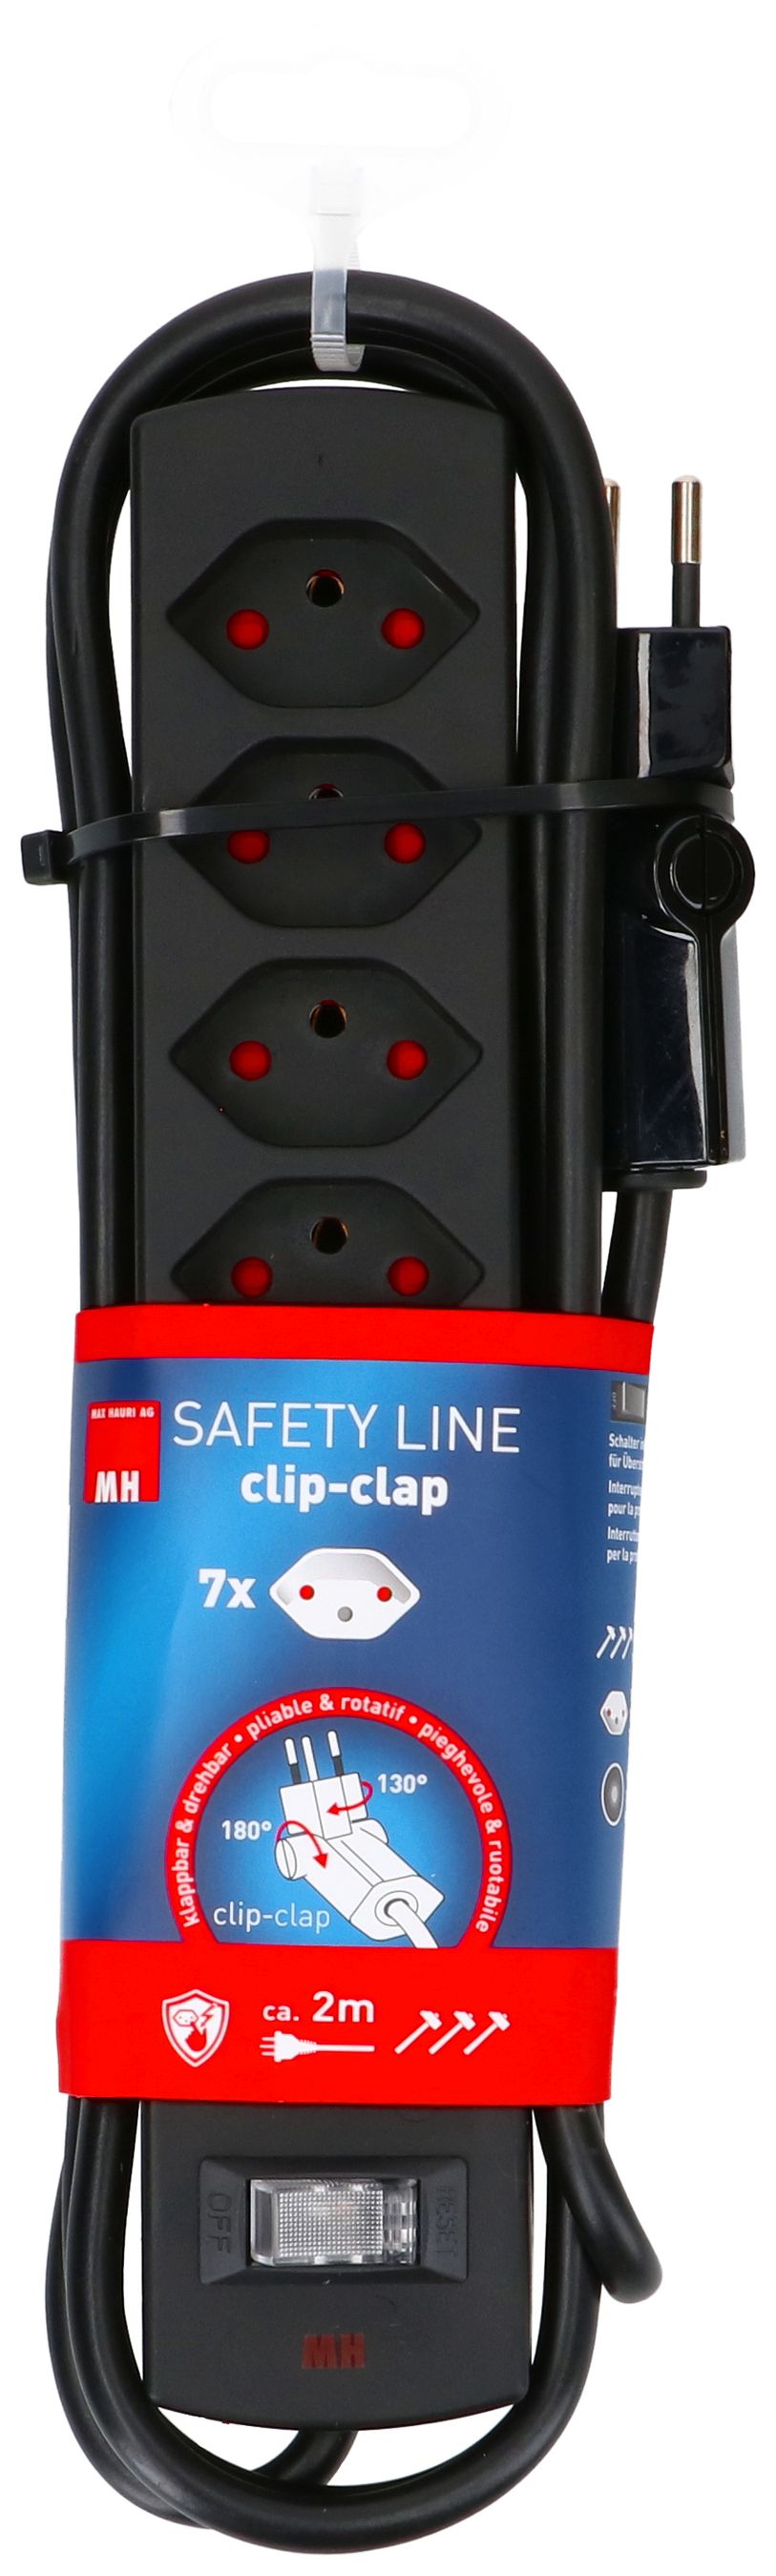 Steckdosenleiste Safety Line 7x Typ 13 BS sw Schalter 2m cli.